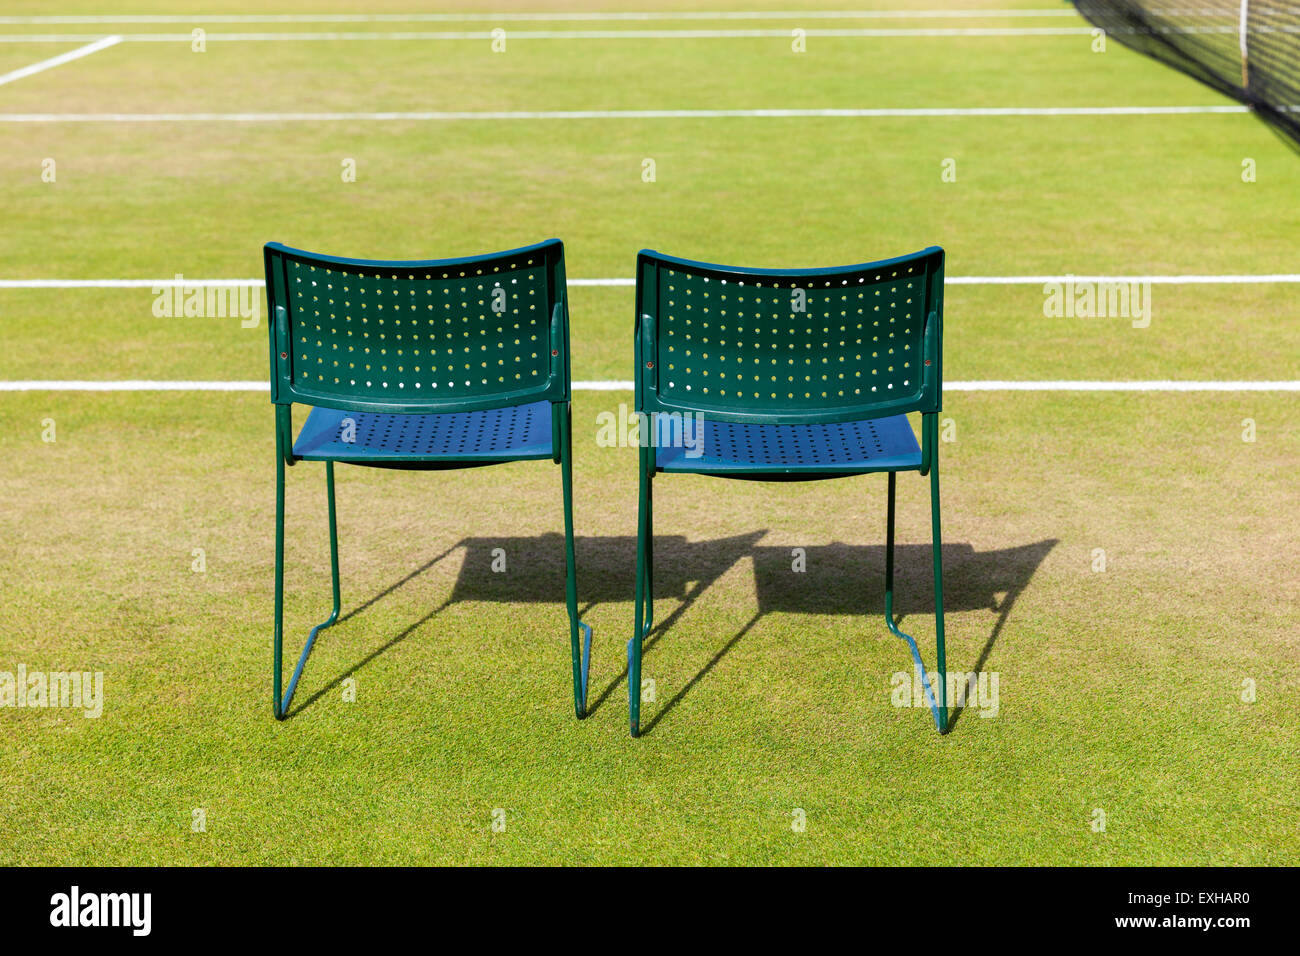 Dos sillas vacías para jugadores en una cancha de césped en el All England Lawn Tennis Club durante el Campeonato de Tenis de Wimbledon, Londres Foto de stock